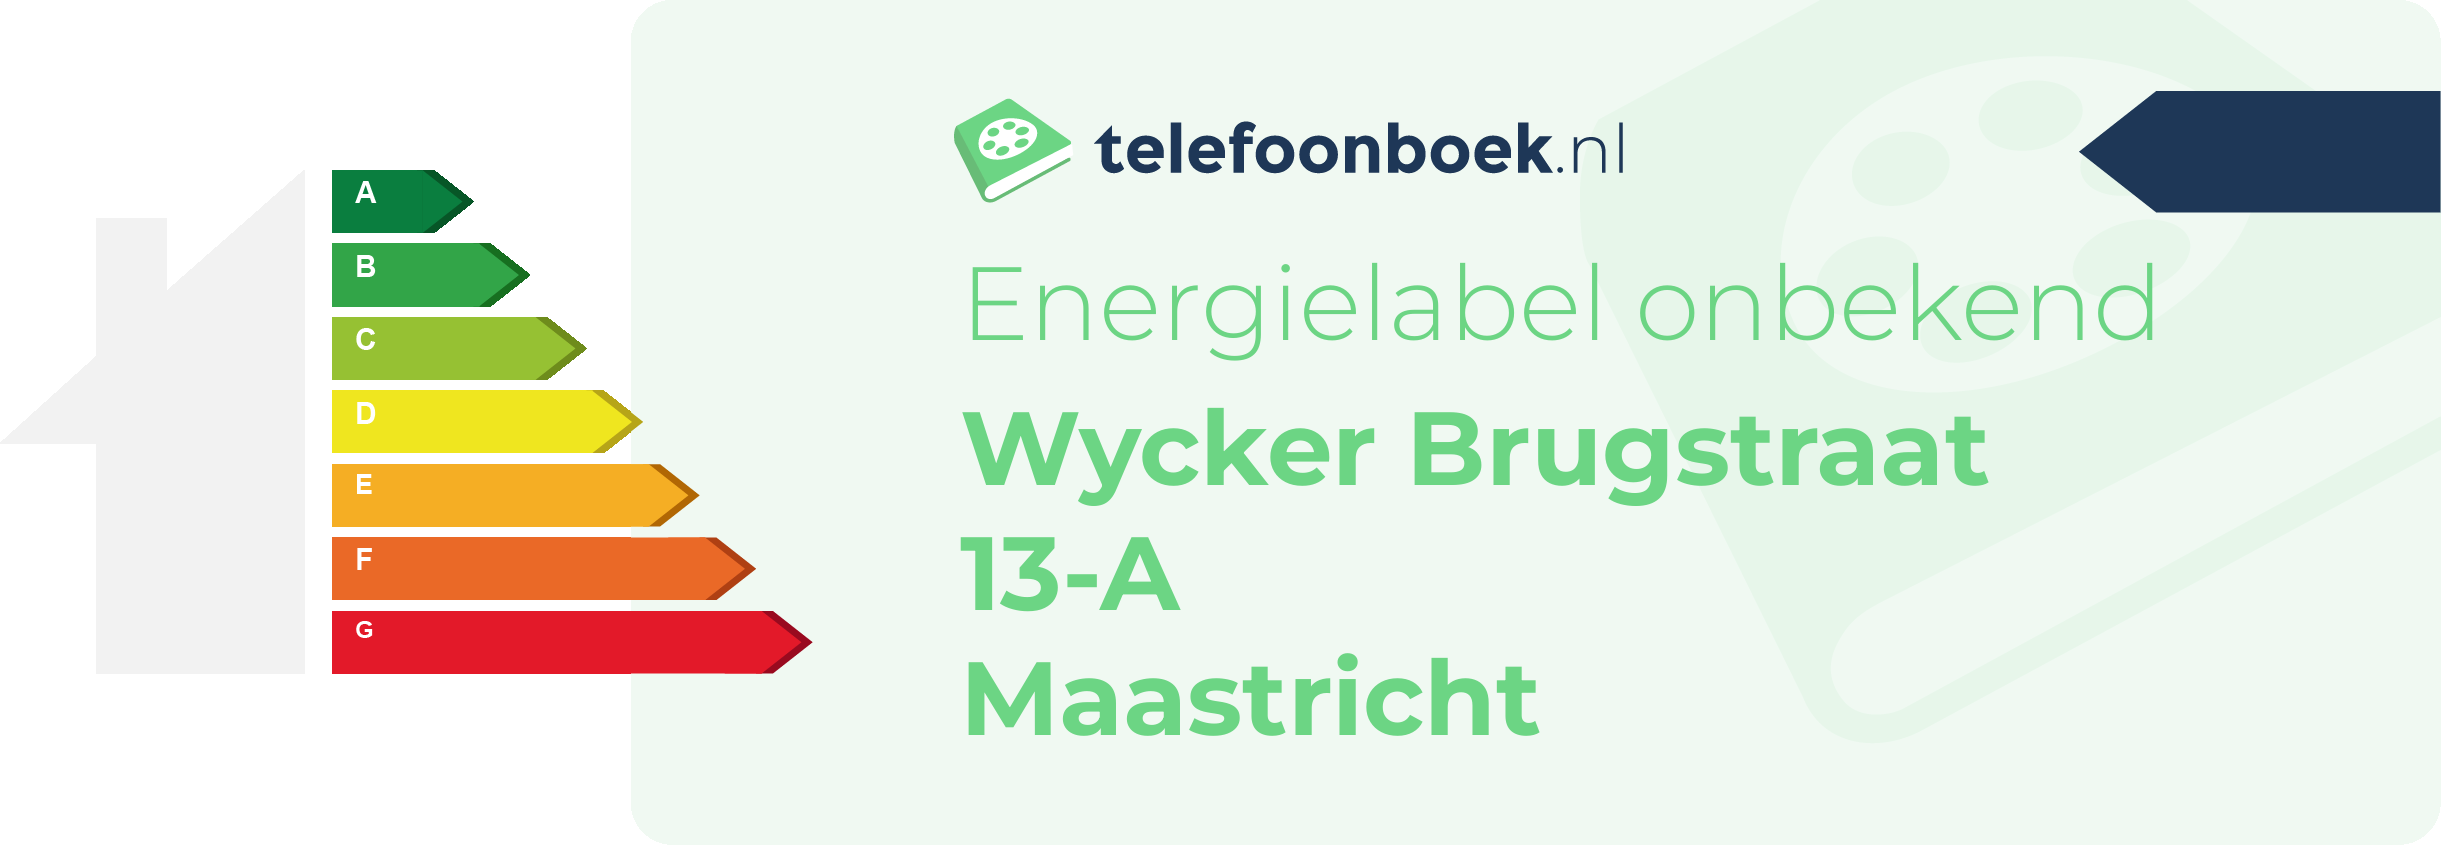 Energielabel Wycker Brugstraat 13-A Maastricht